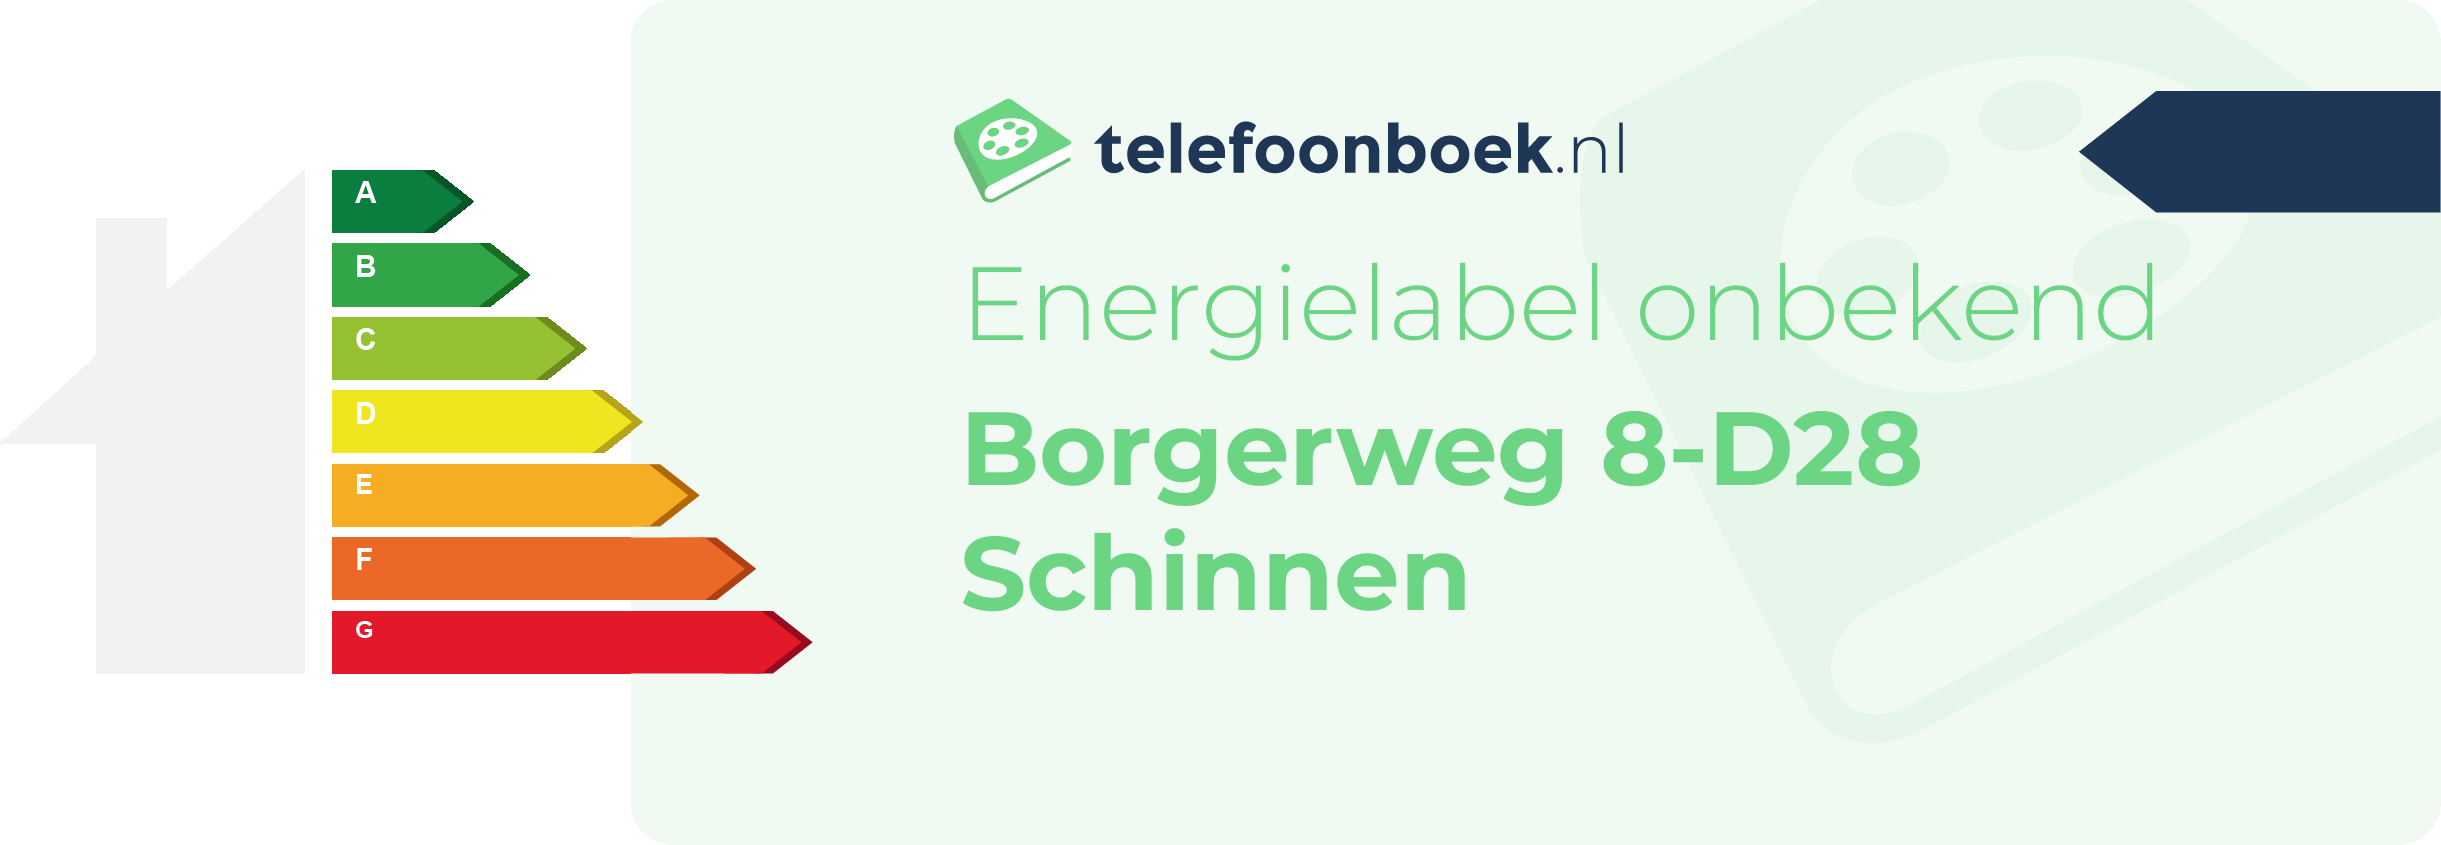 Energielabel Borgerweg 8-D28 Schinnen